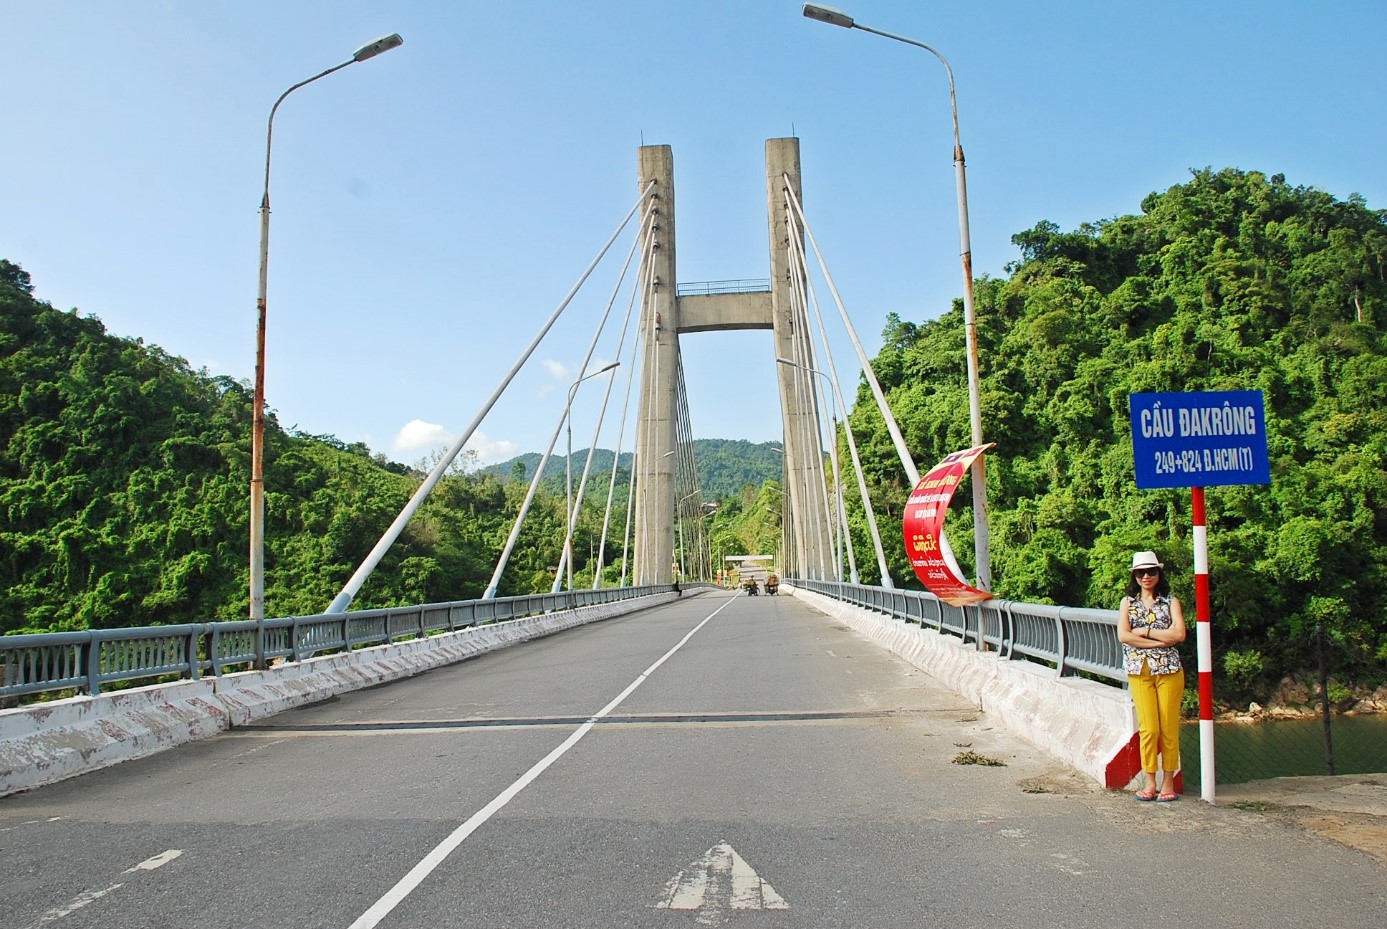 Cầu ĐaK’rông trên Đại lộ Hồ Chí Minh (nhánh Đông)